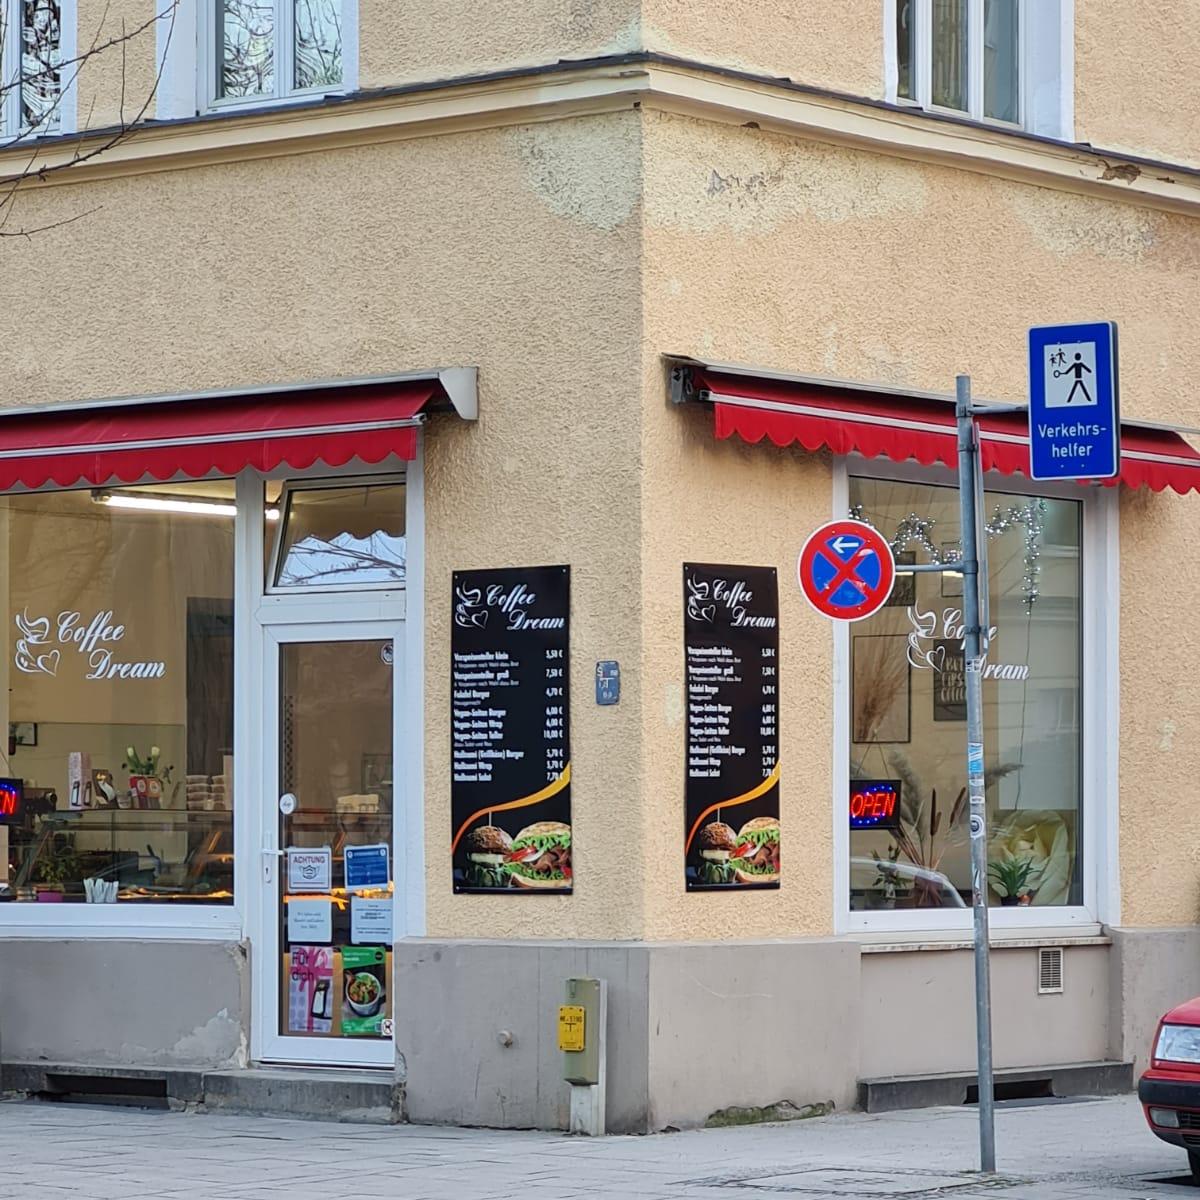 Restaurant "Coffee Dream Schwantahlerhöhe in" in München